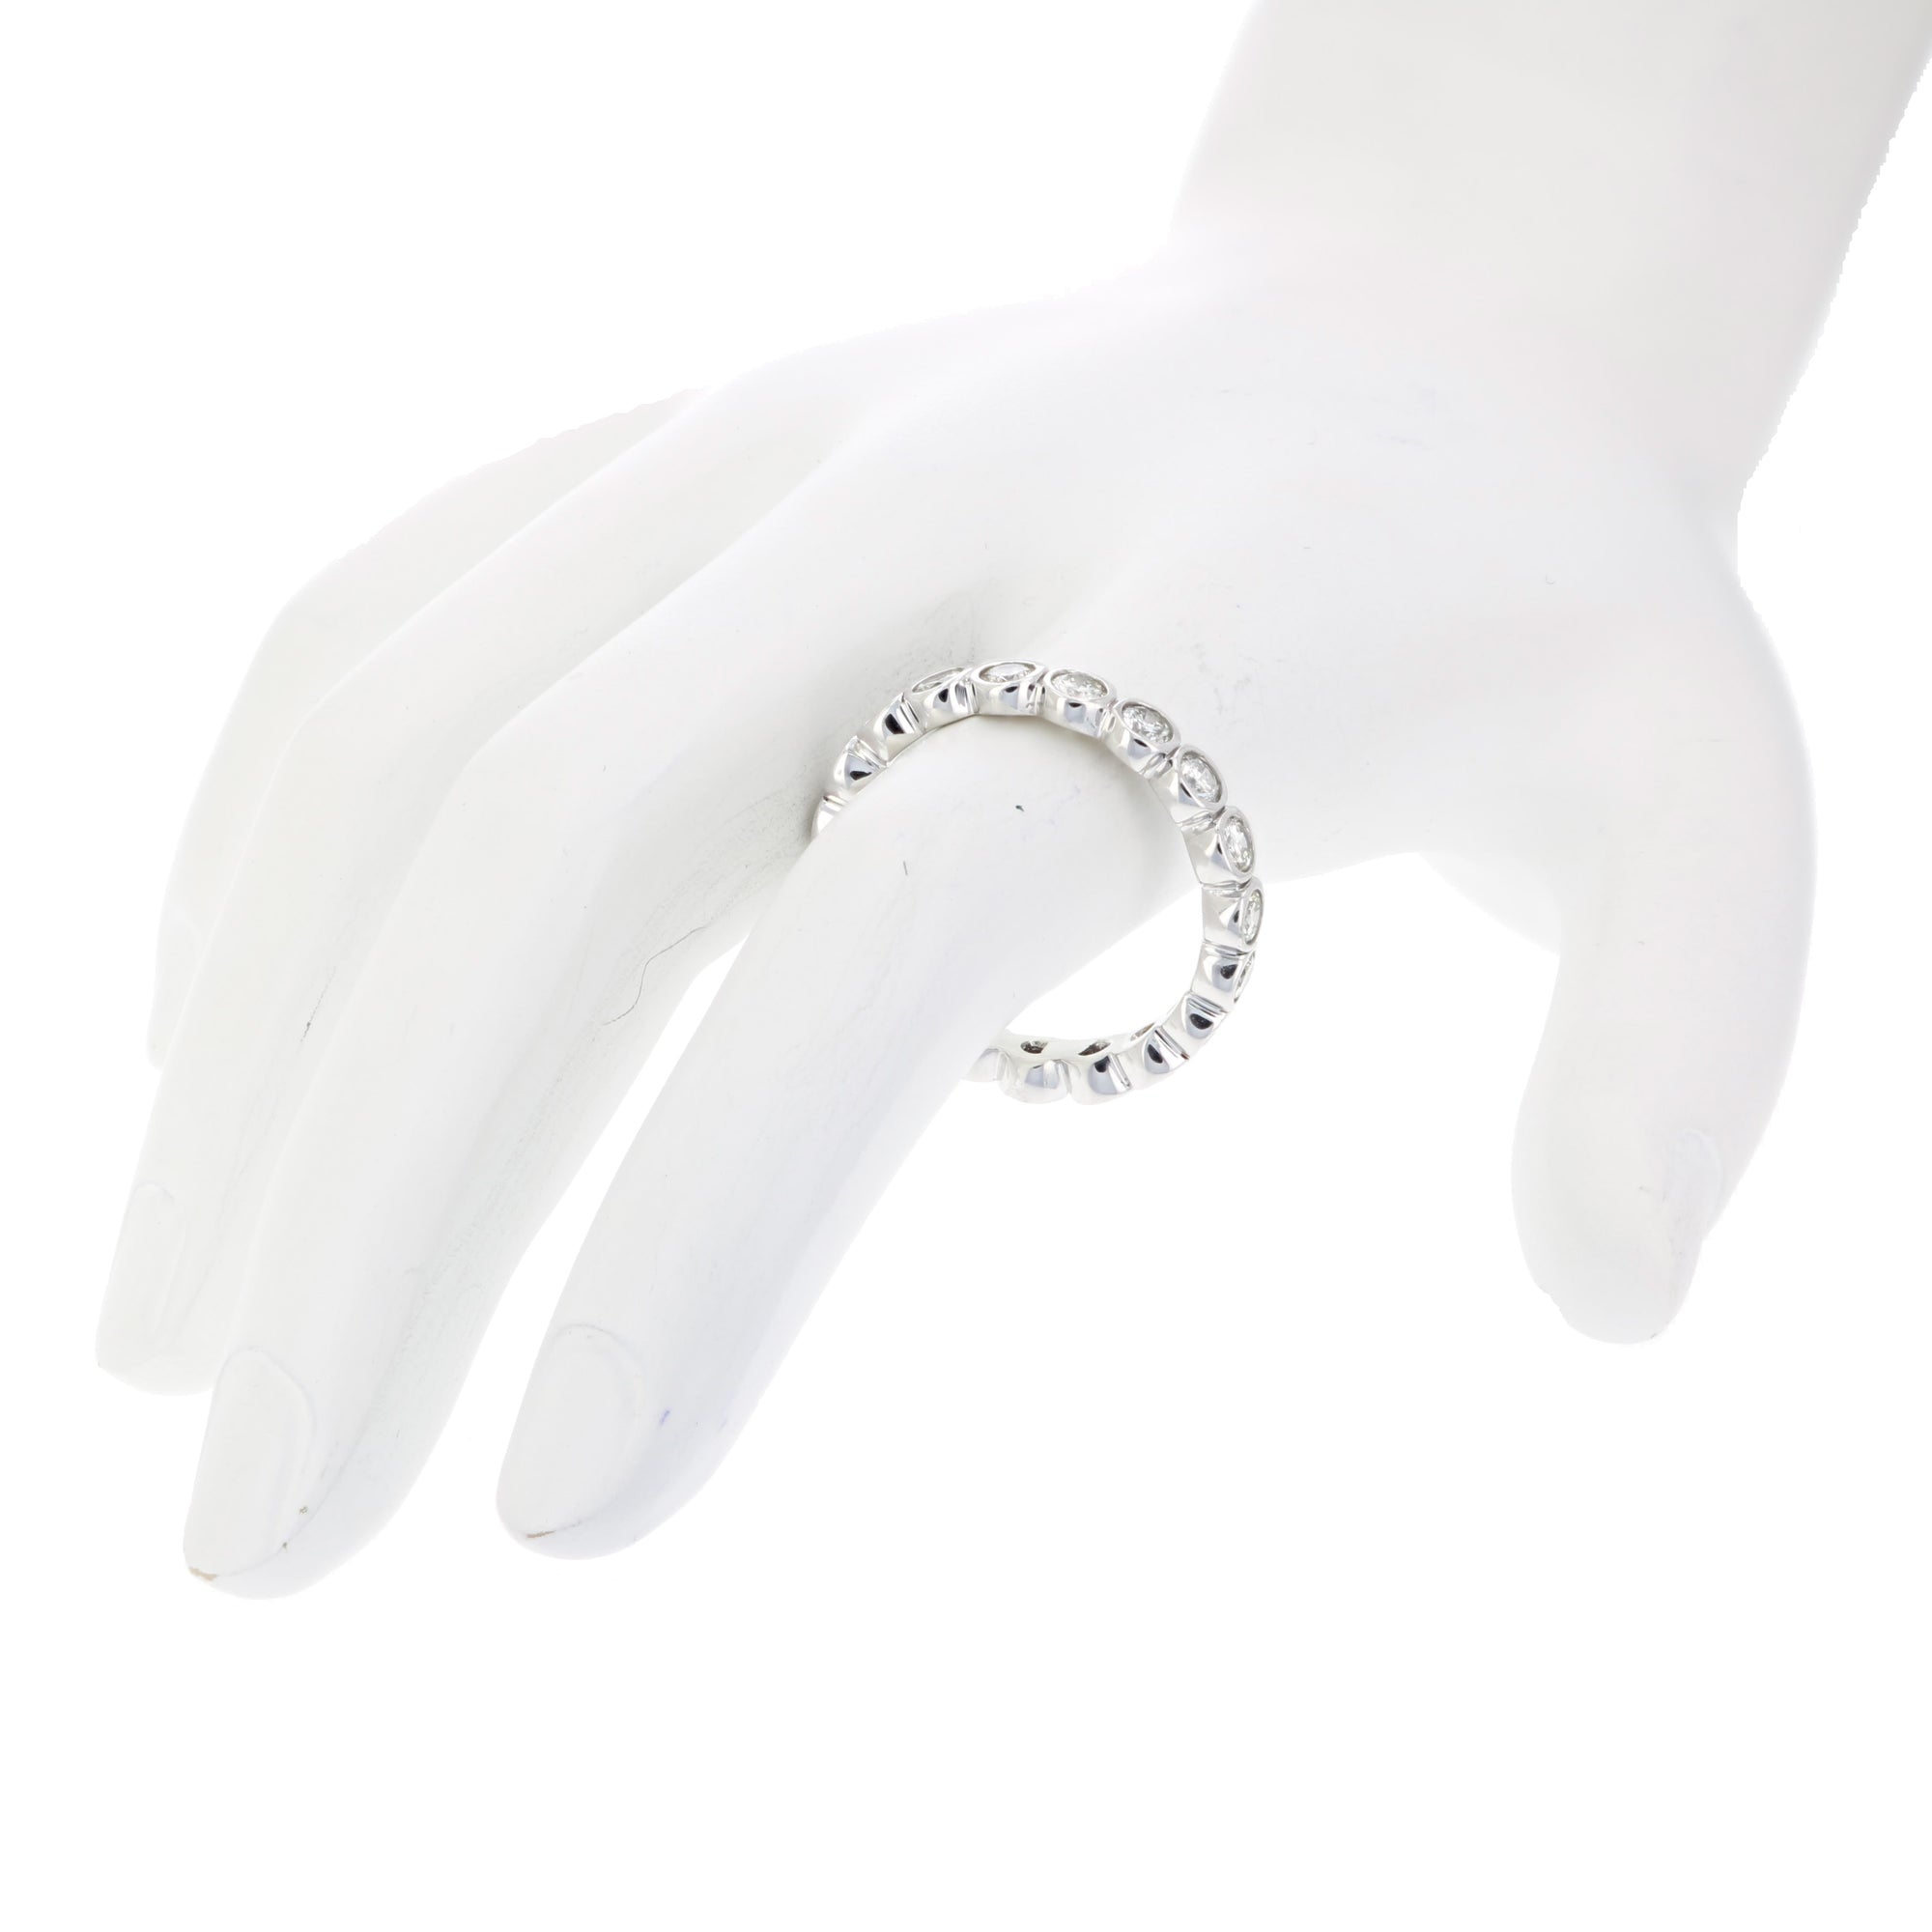 1.50 cttw Diamond Eternity Ring for Women, Wedding Band in 14K White Gold Bezel Set, Size 5-9